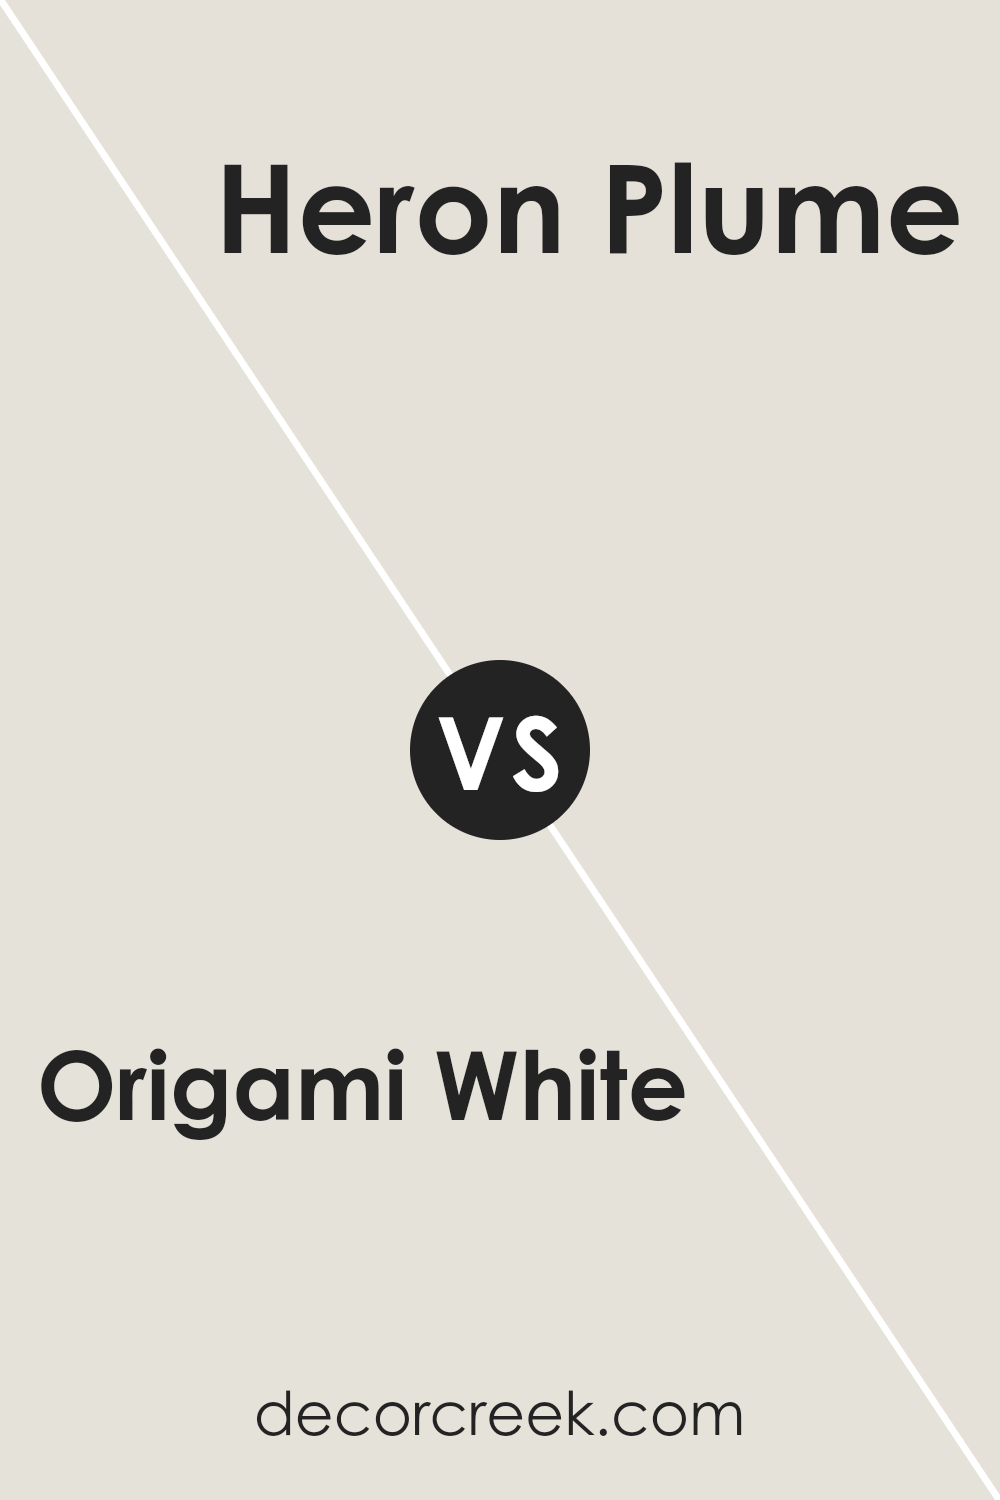 origami_white_sw_7636_vs_heron_plume_sw_6070